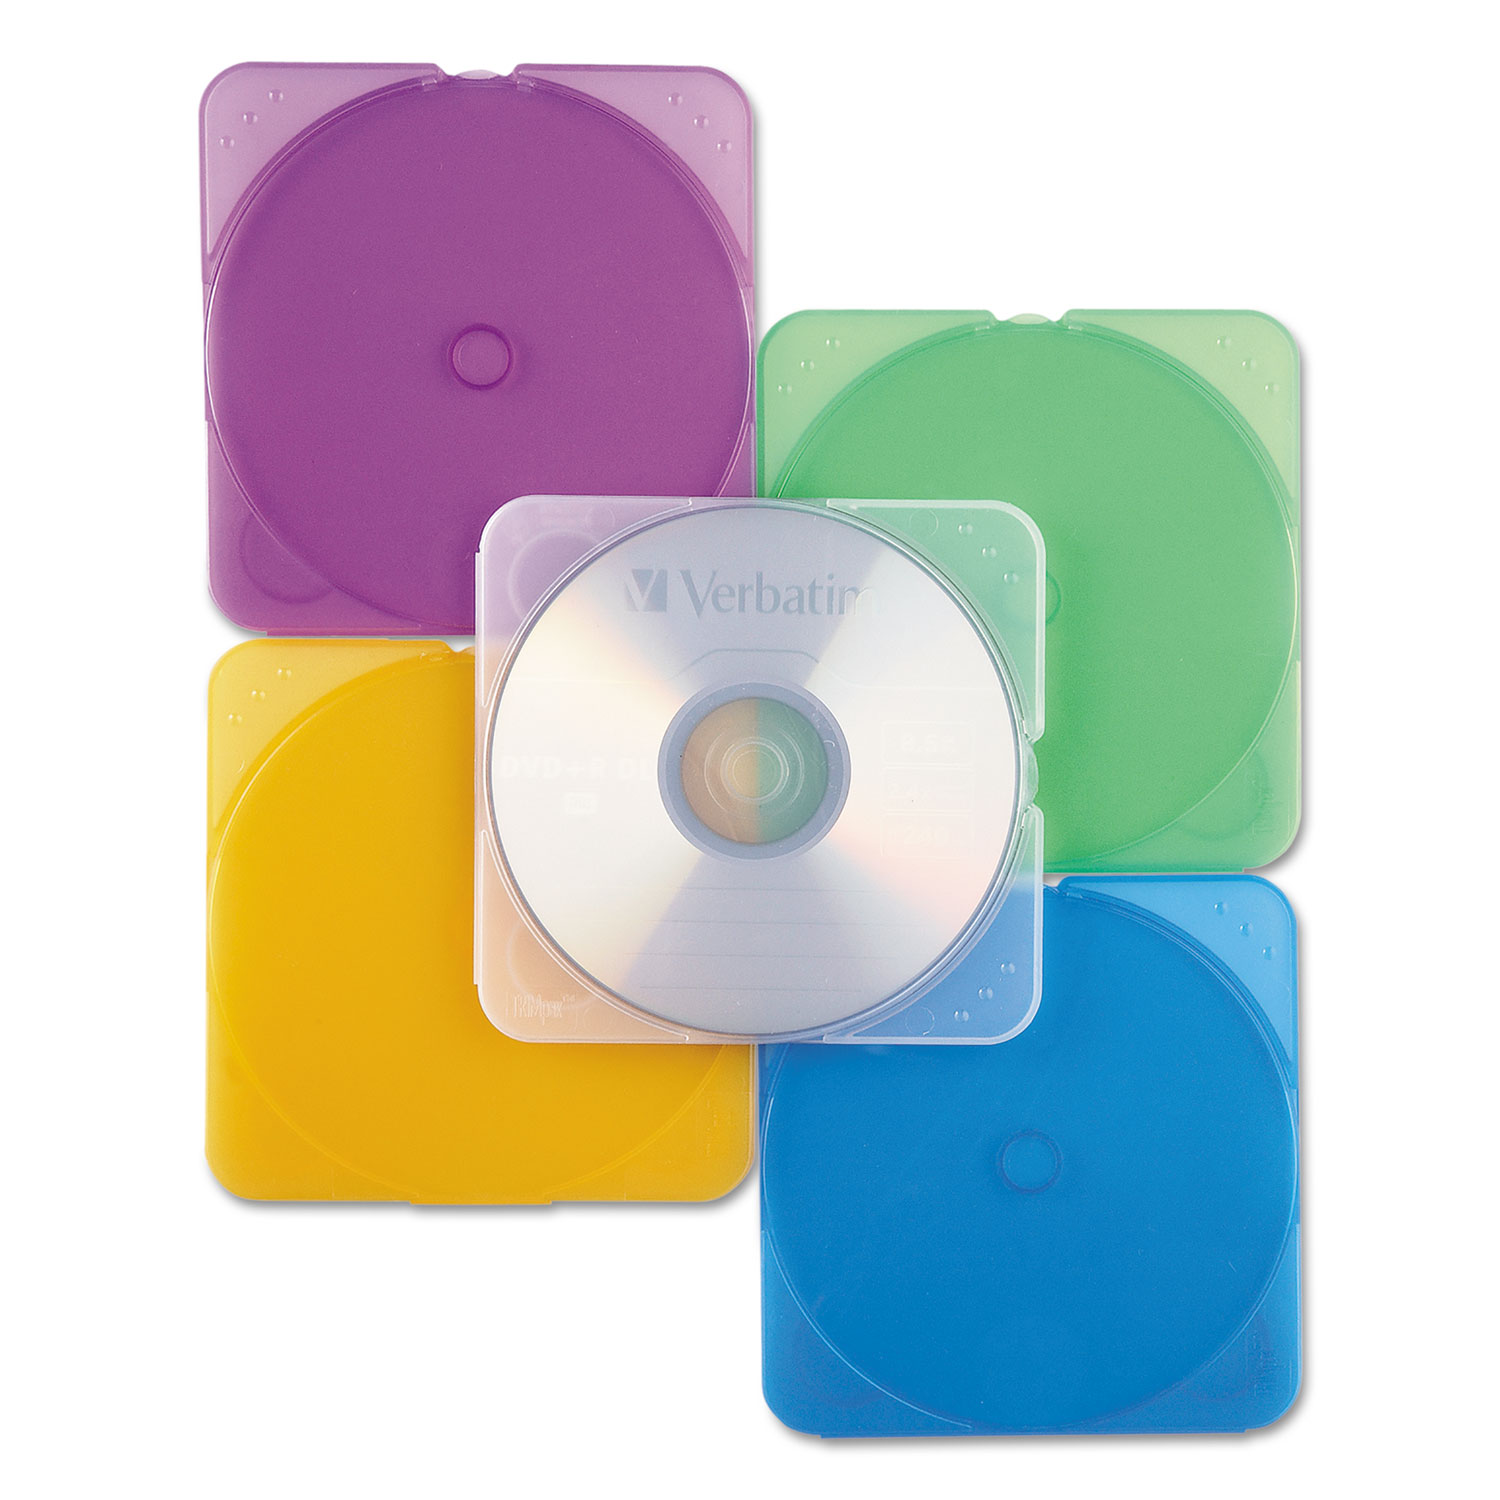  Verbatim 93804 TRIMpak CD/DVD Case, Assorted Colors, 10/Pack (VER93804) 